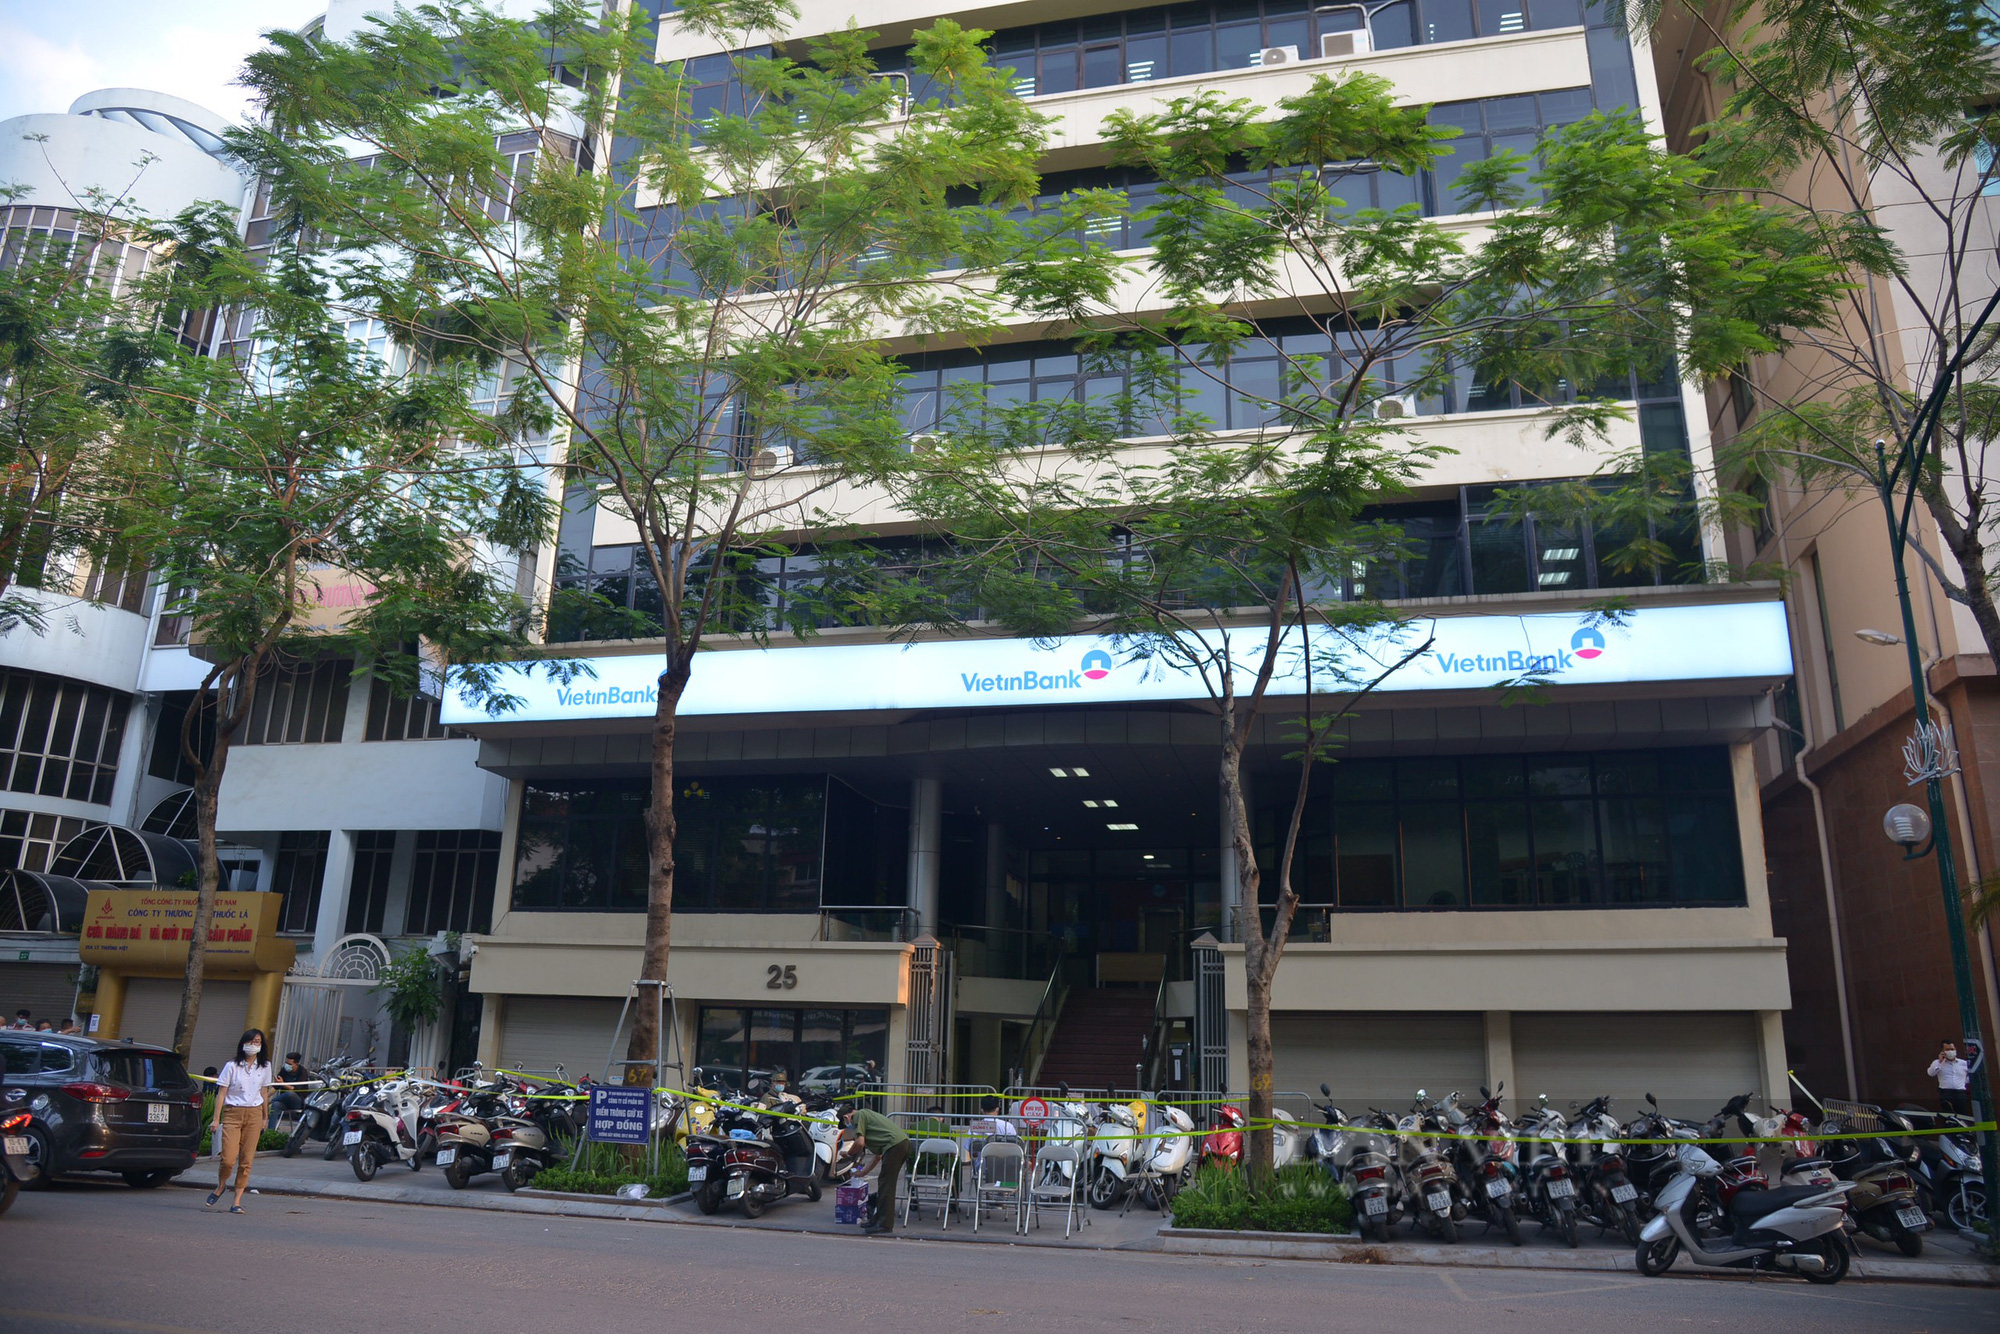 Phong tỏa tòa nhà Vietinbank 25 Lý Thường Kiệt, Hà Nội vì Covid-19 - Ảnh 1.